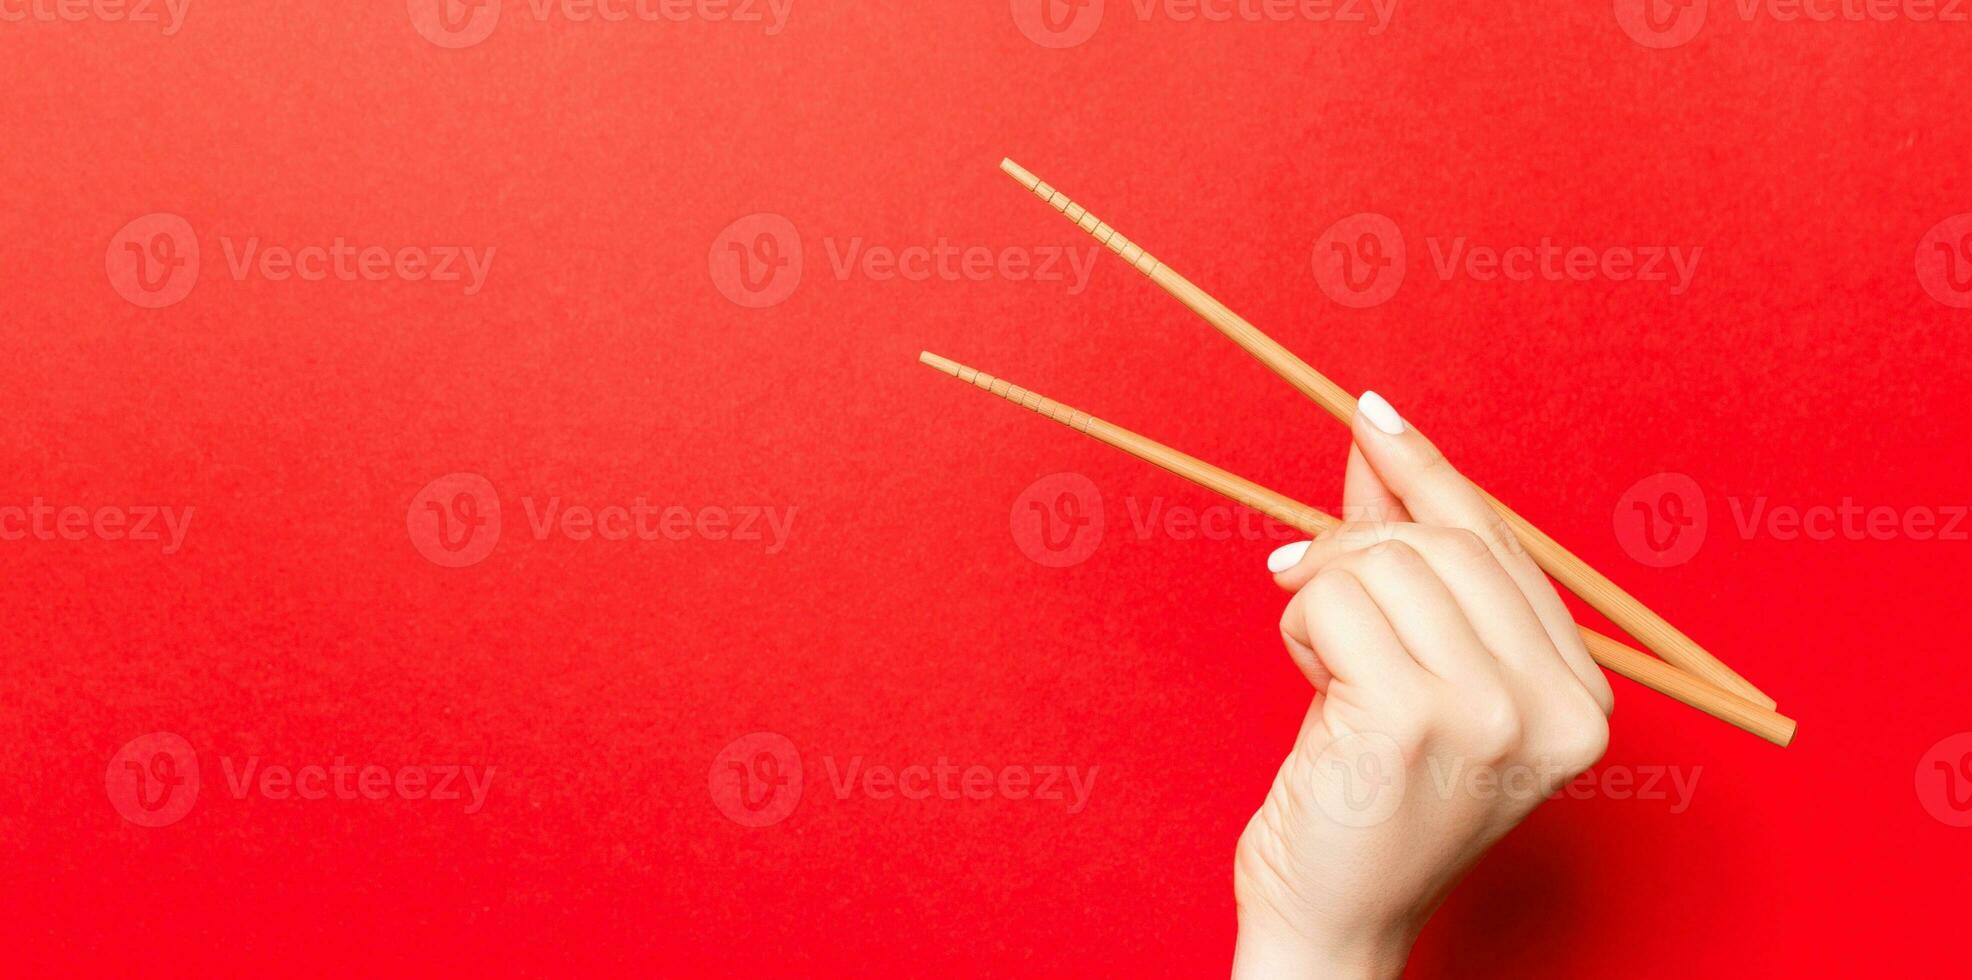 imagen creativa de palillos de madera en mano femenina sobre fondo rojo. comida japonesa y china con espacio de copia foto